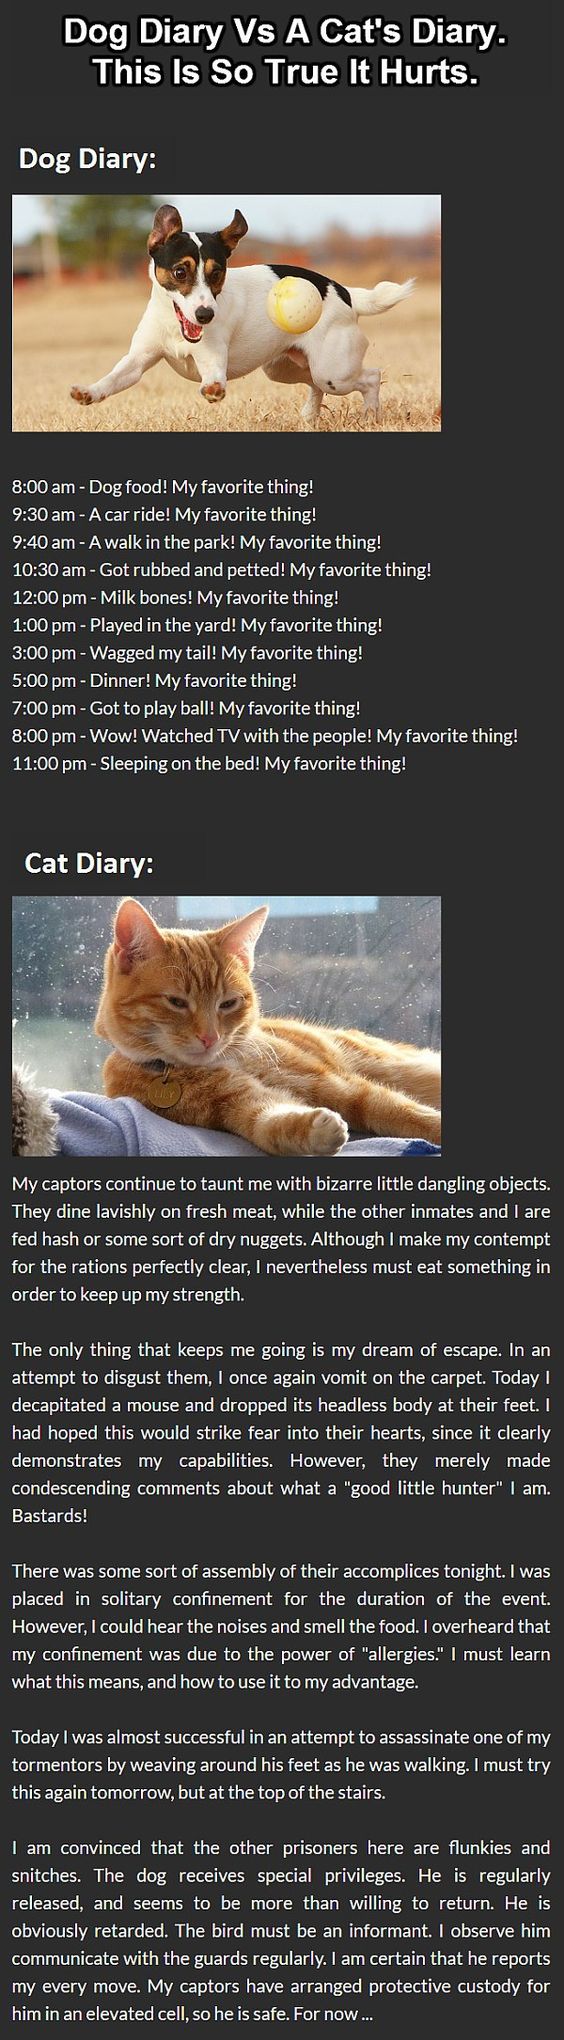 Dog Versus Cat Diary